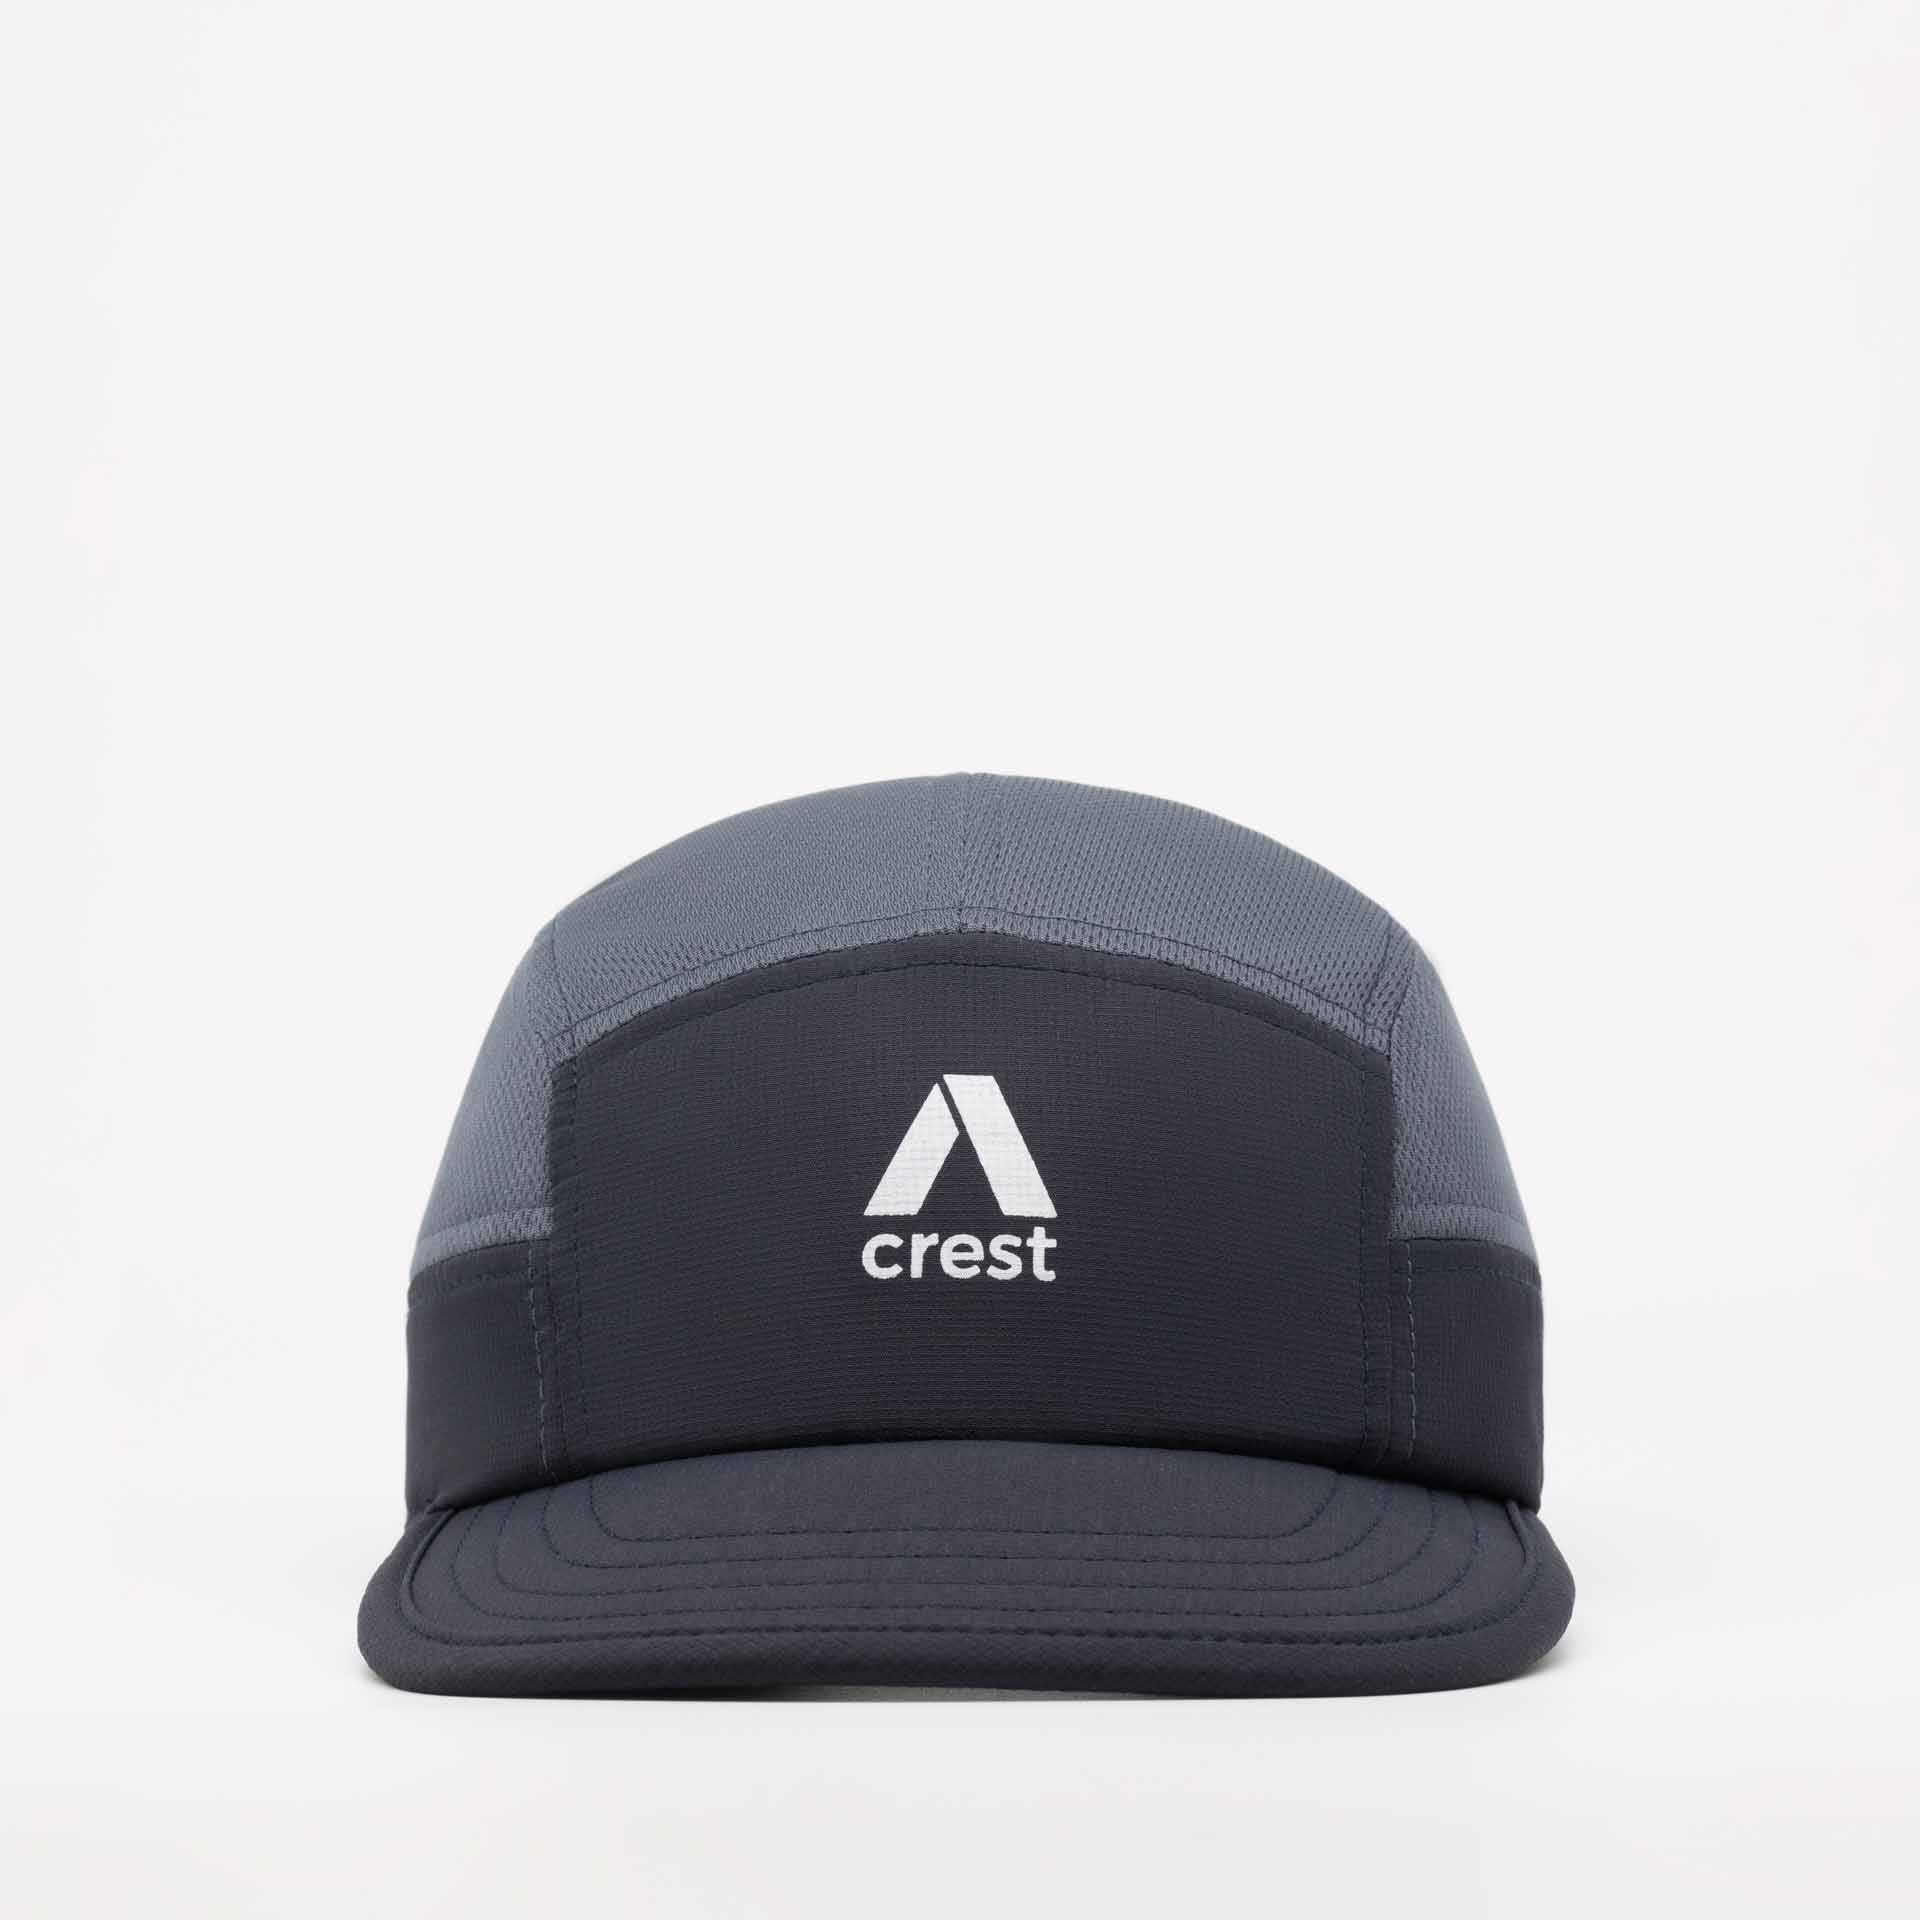 Crest Cap - Charcoal